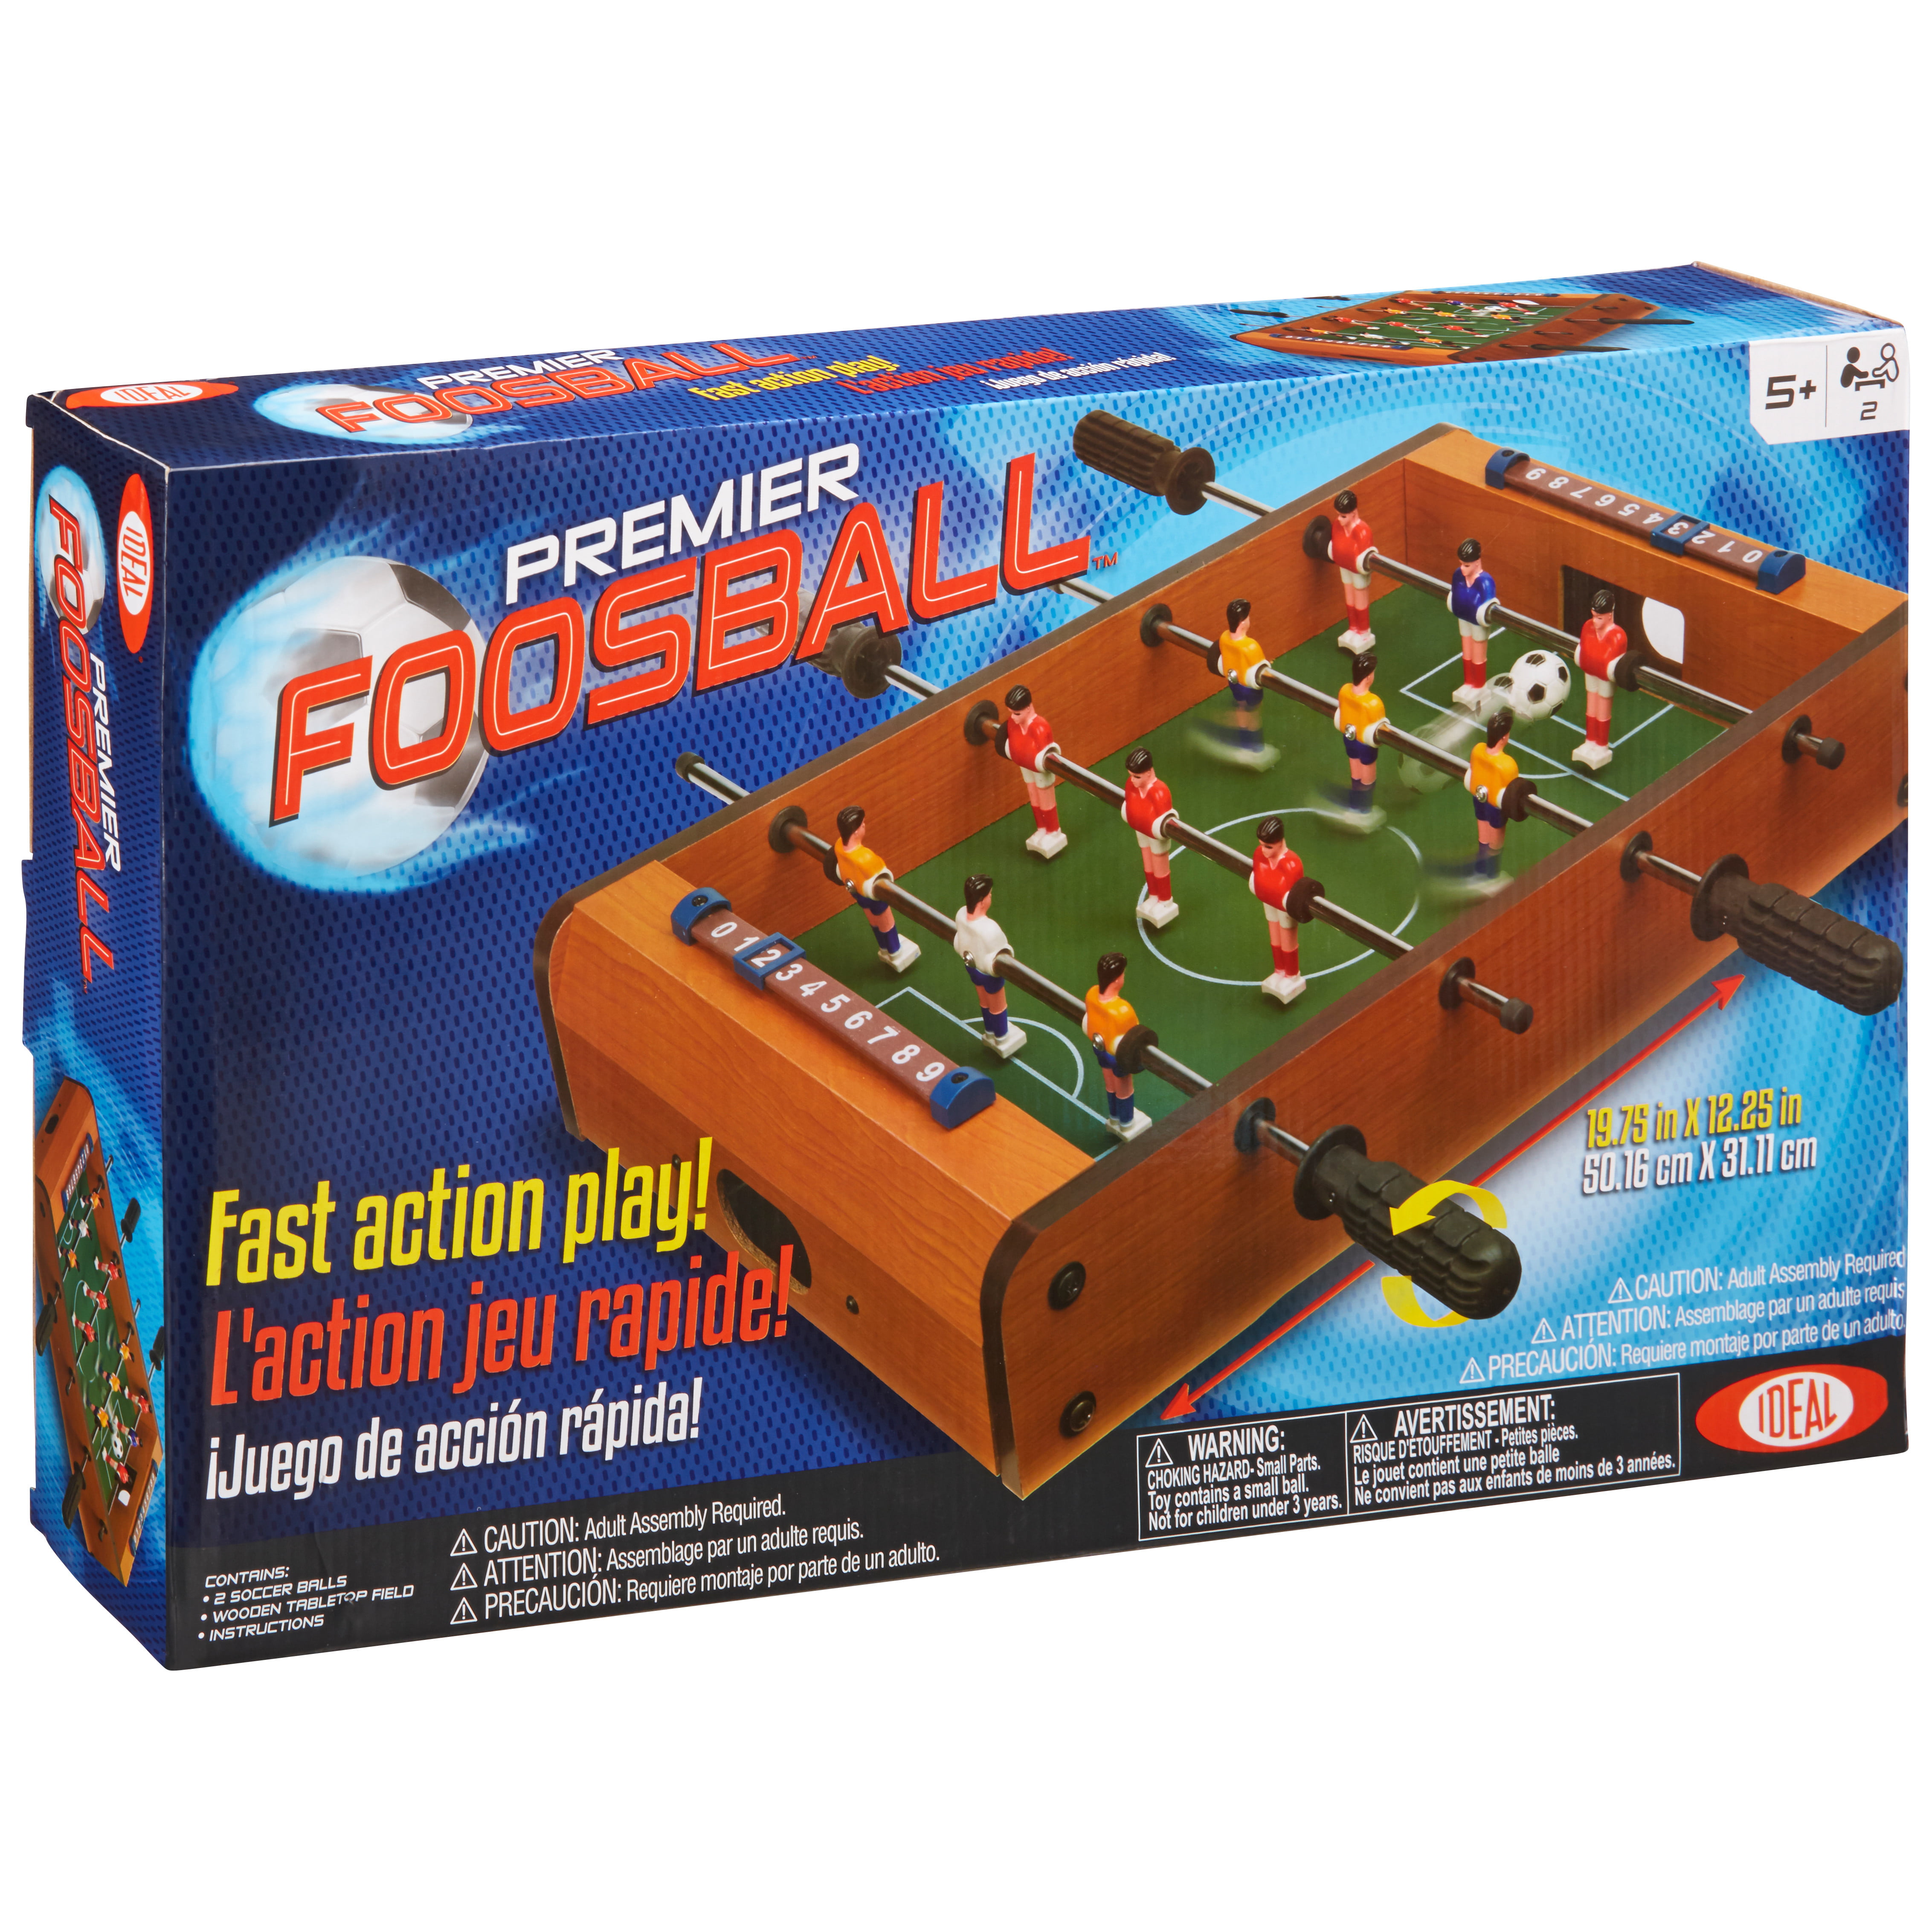 Mini sports de table pour enfants et adultes, football, arcade